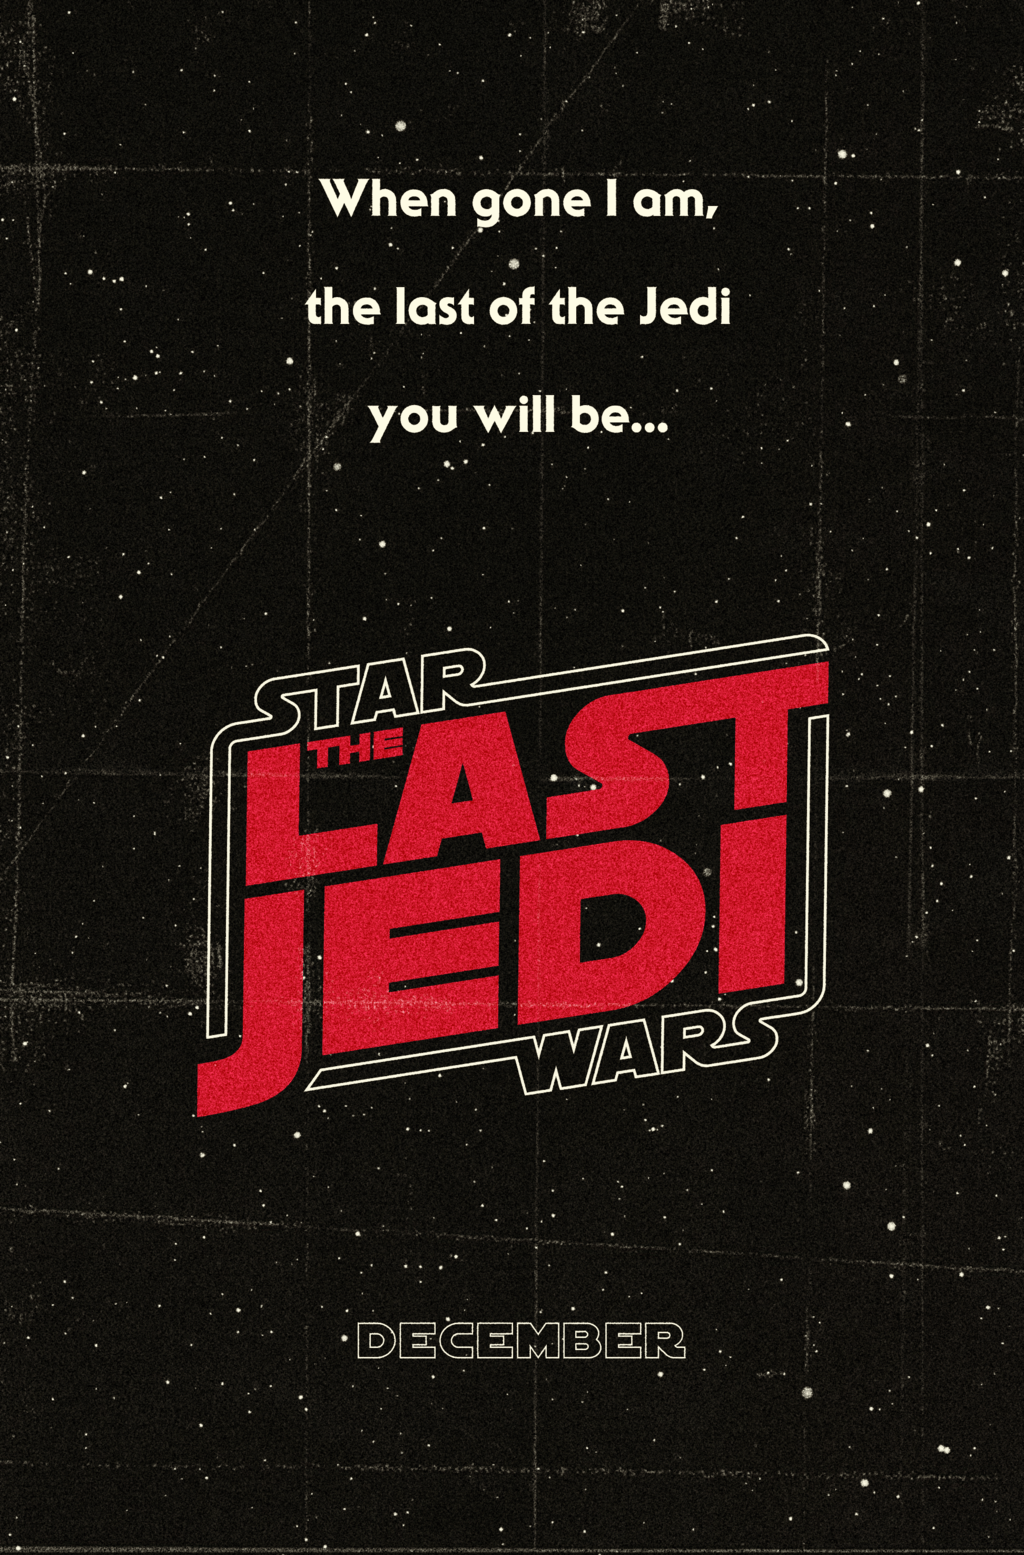 Star Wars Episode VIII Last Jedi (2017) HD Wallpaper From